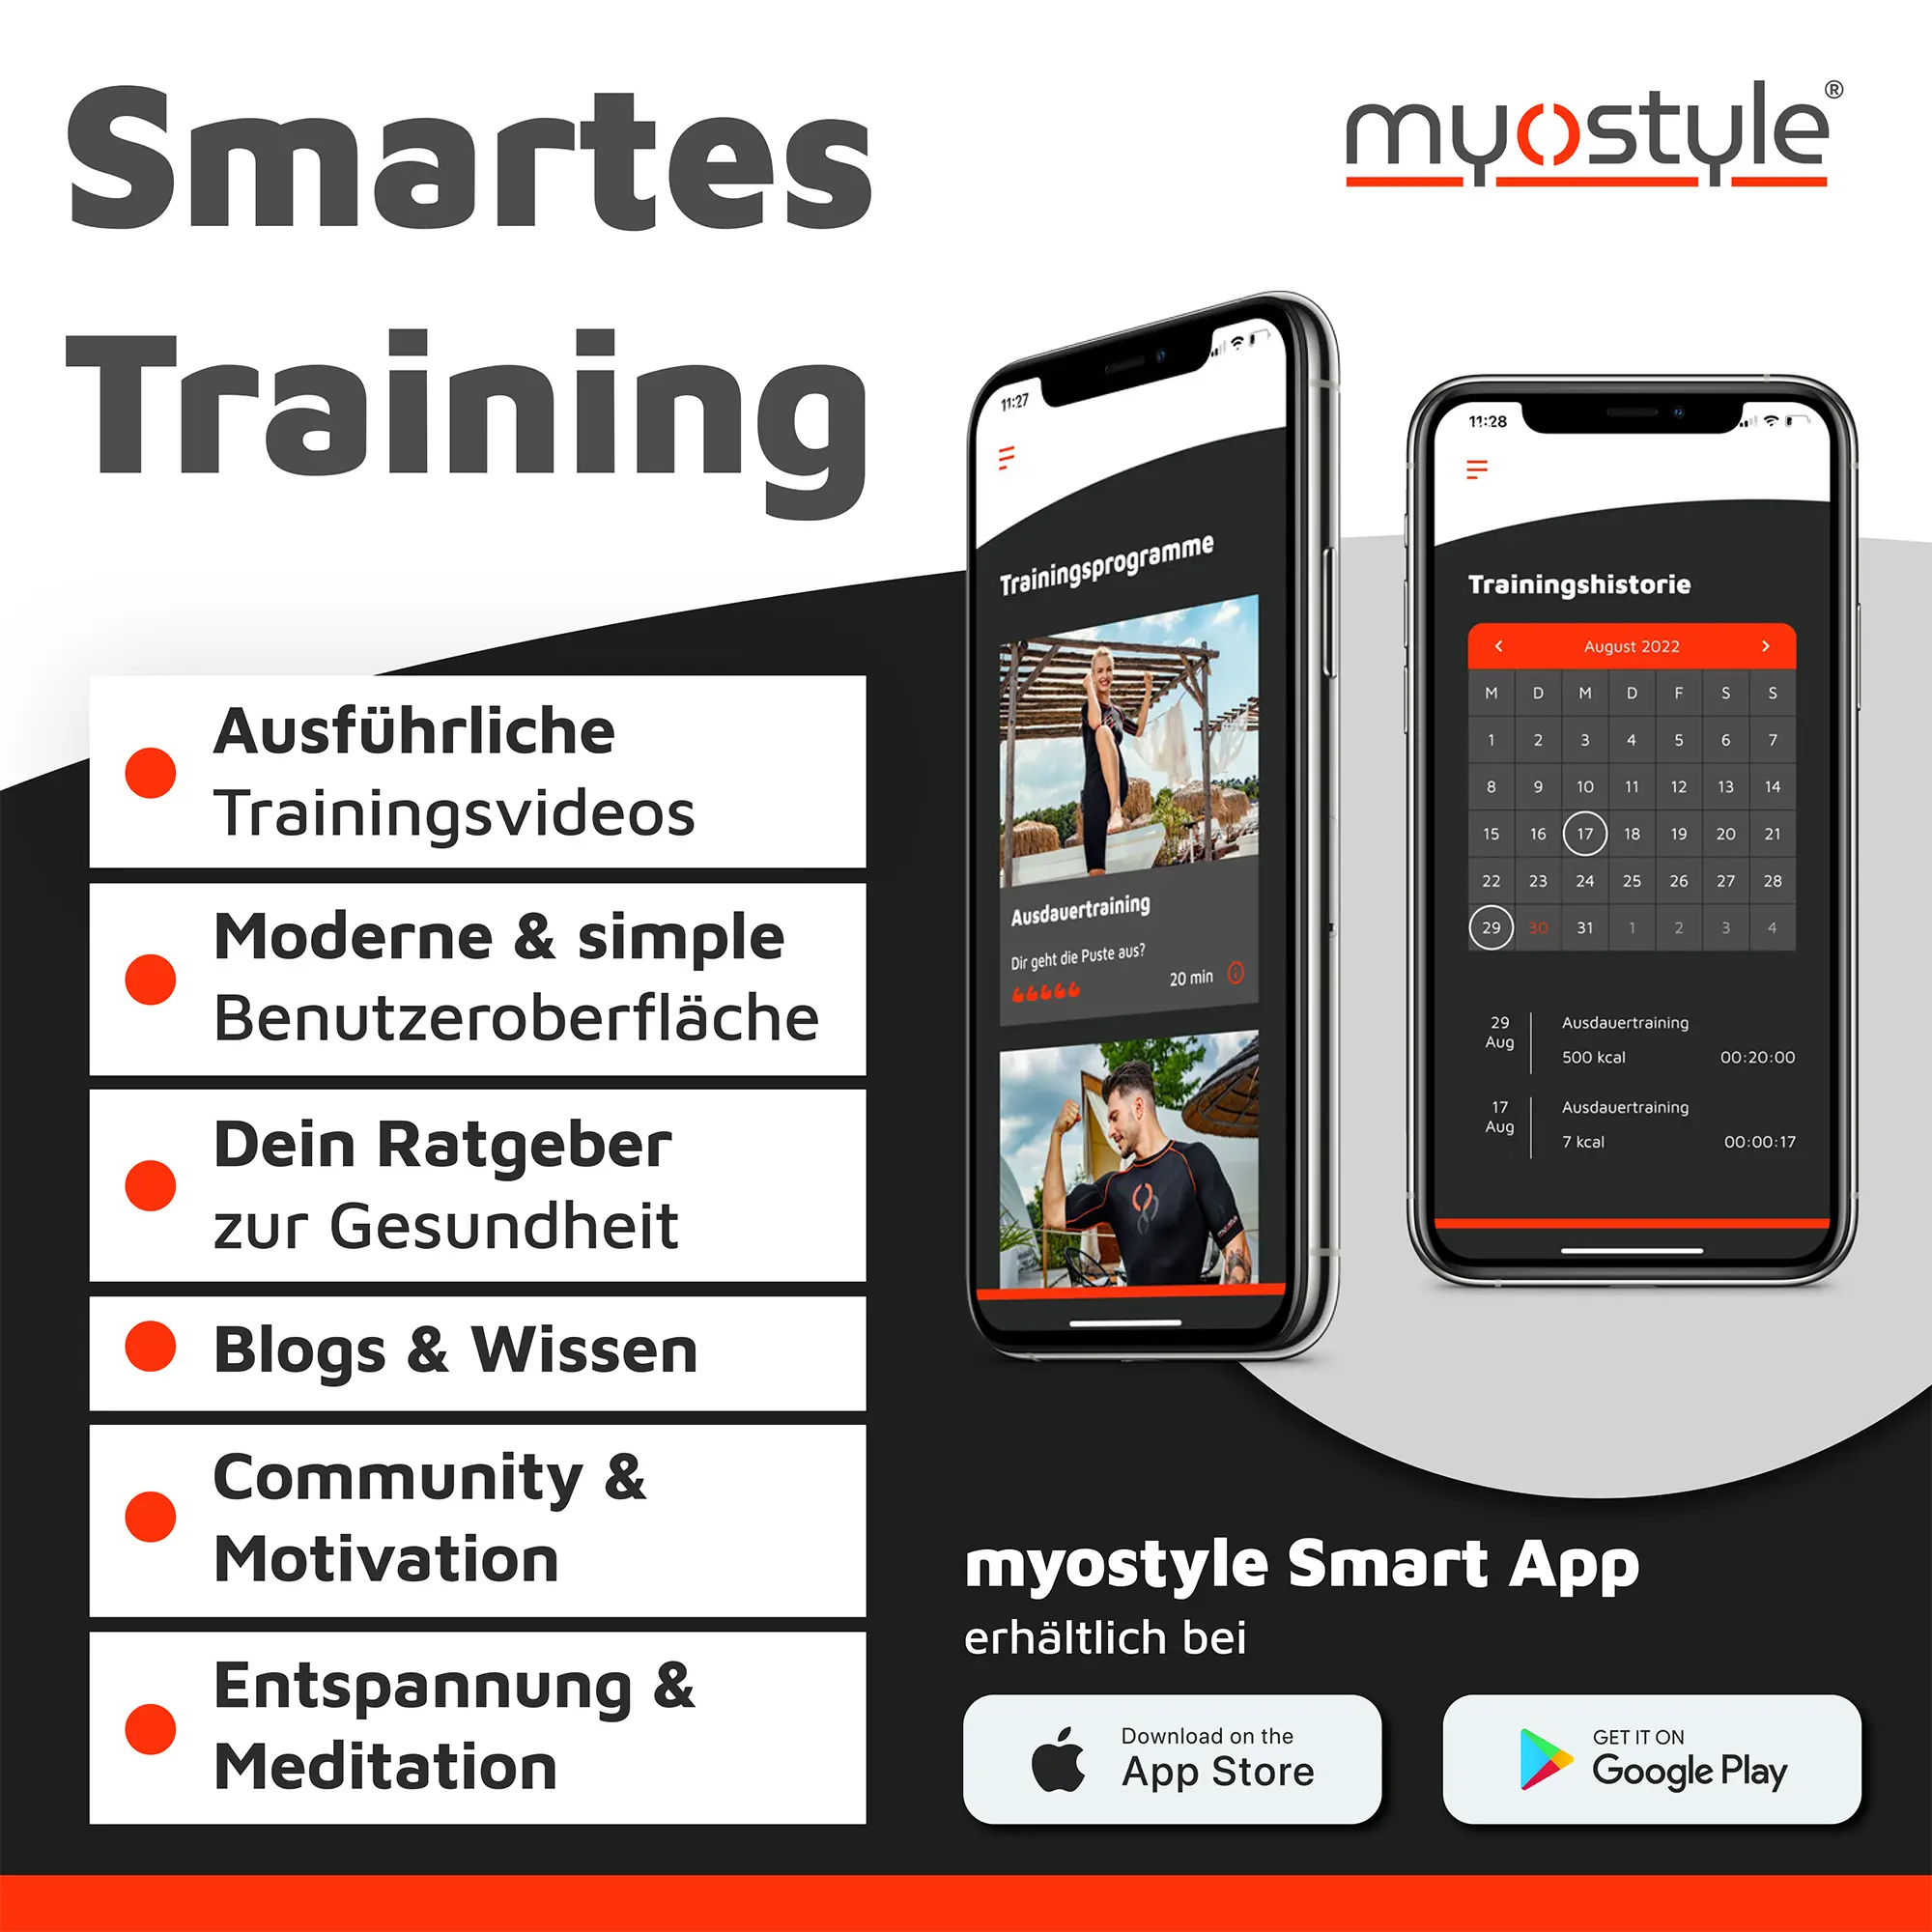 Zwei Smartphones mit der Benutzeroberfläche der myostyle Smart-EMS-Trainings-App. Es zeigt den Trainingskalender und Trainingsprogrammvideos.